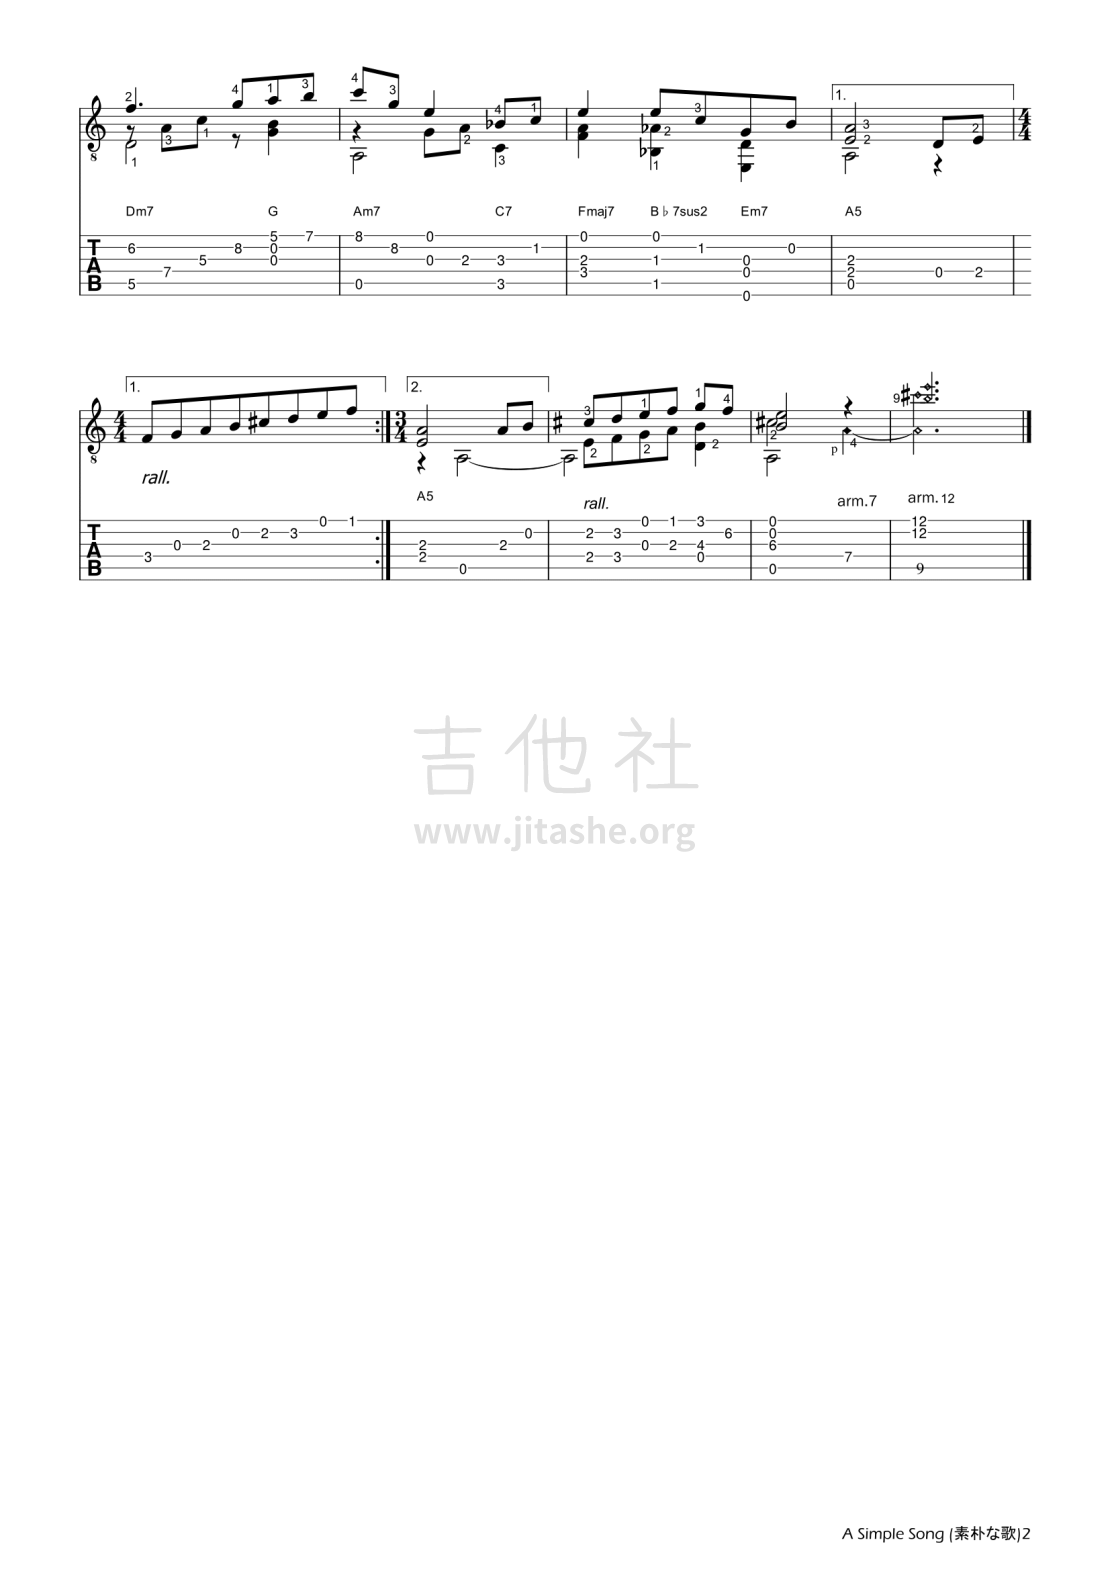 打印:A Simple Song吉他谱_佐藤弘和(Hirokazu Sato)_A Simple Song-2.png